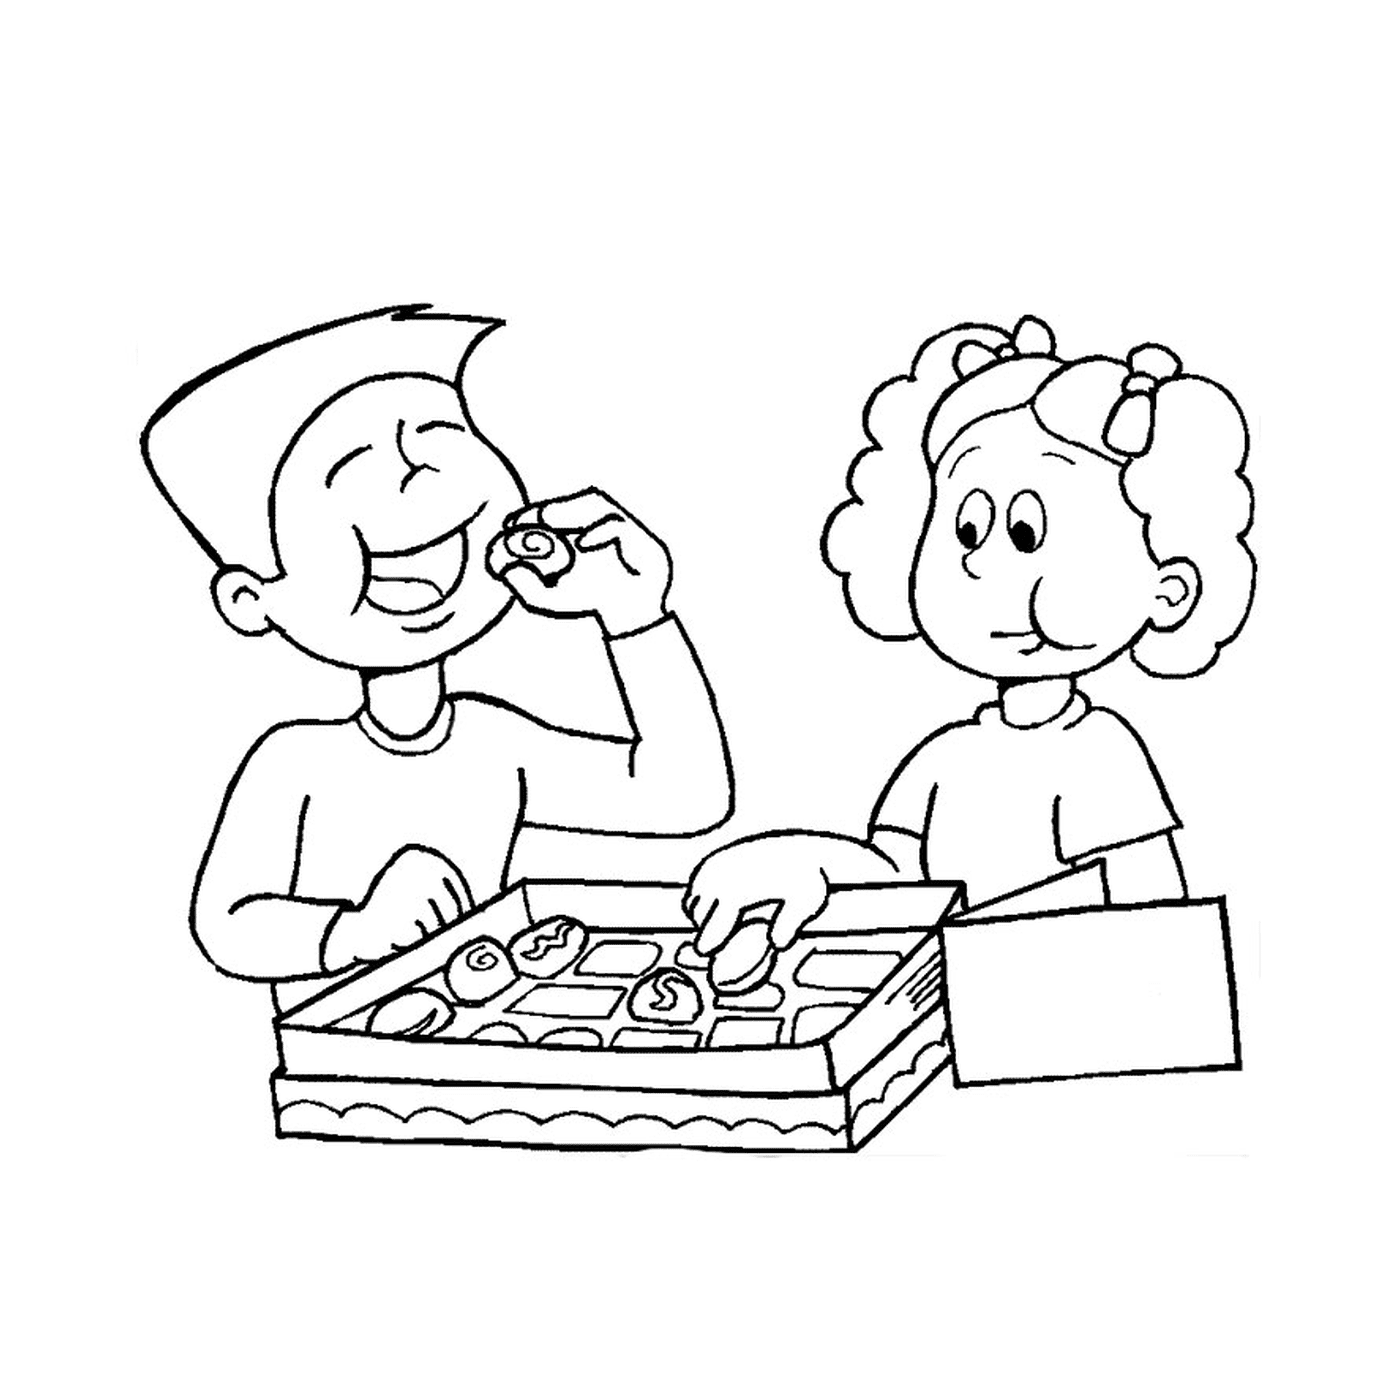  Un niño y una niña comiendo rosquillas 